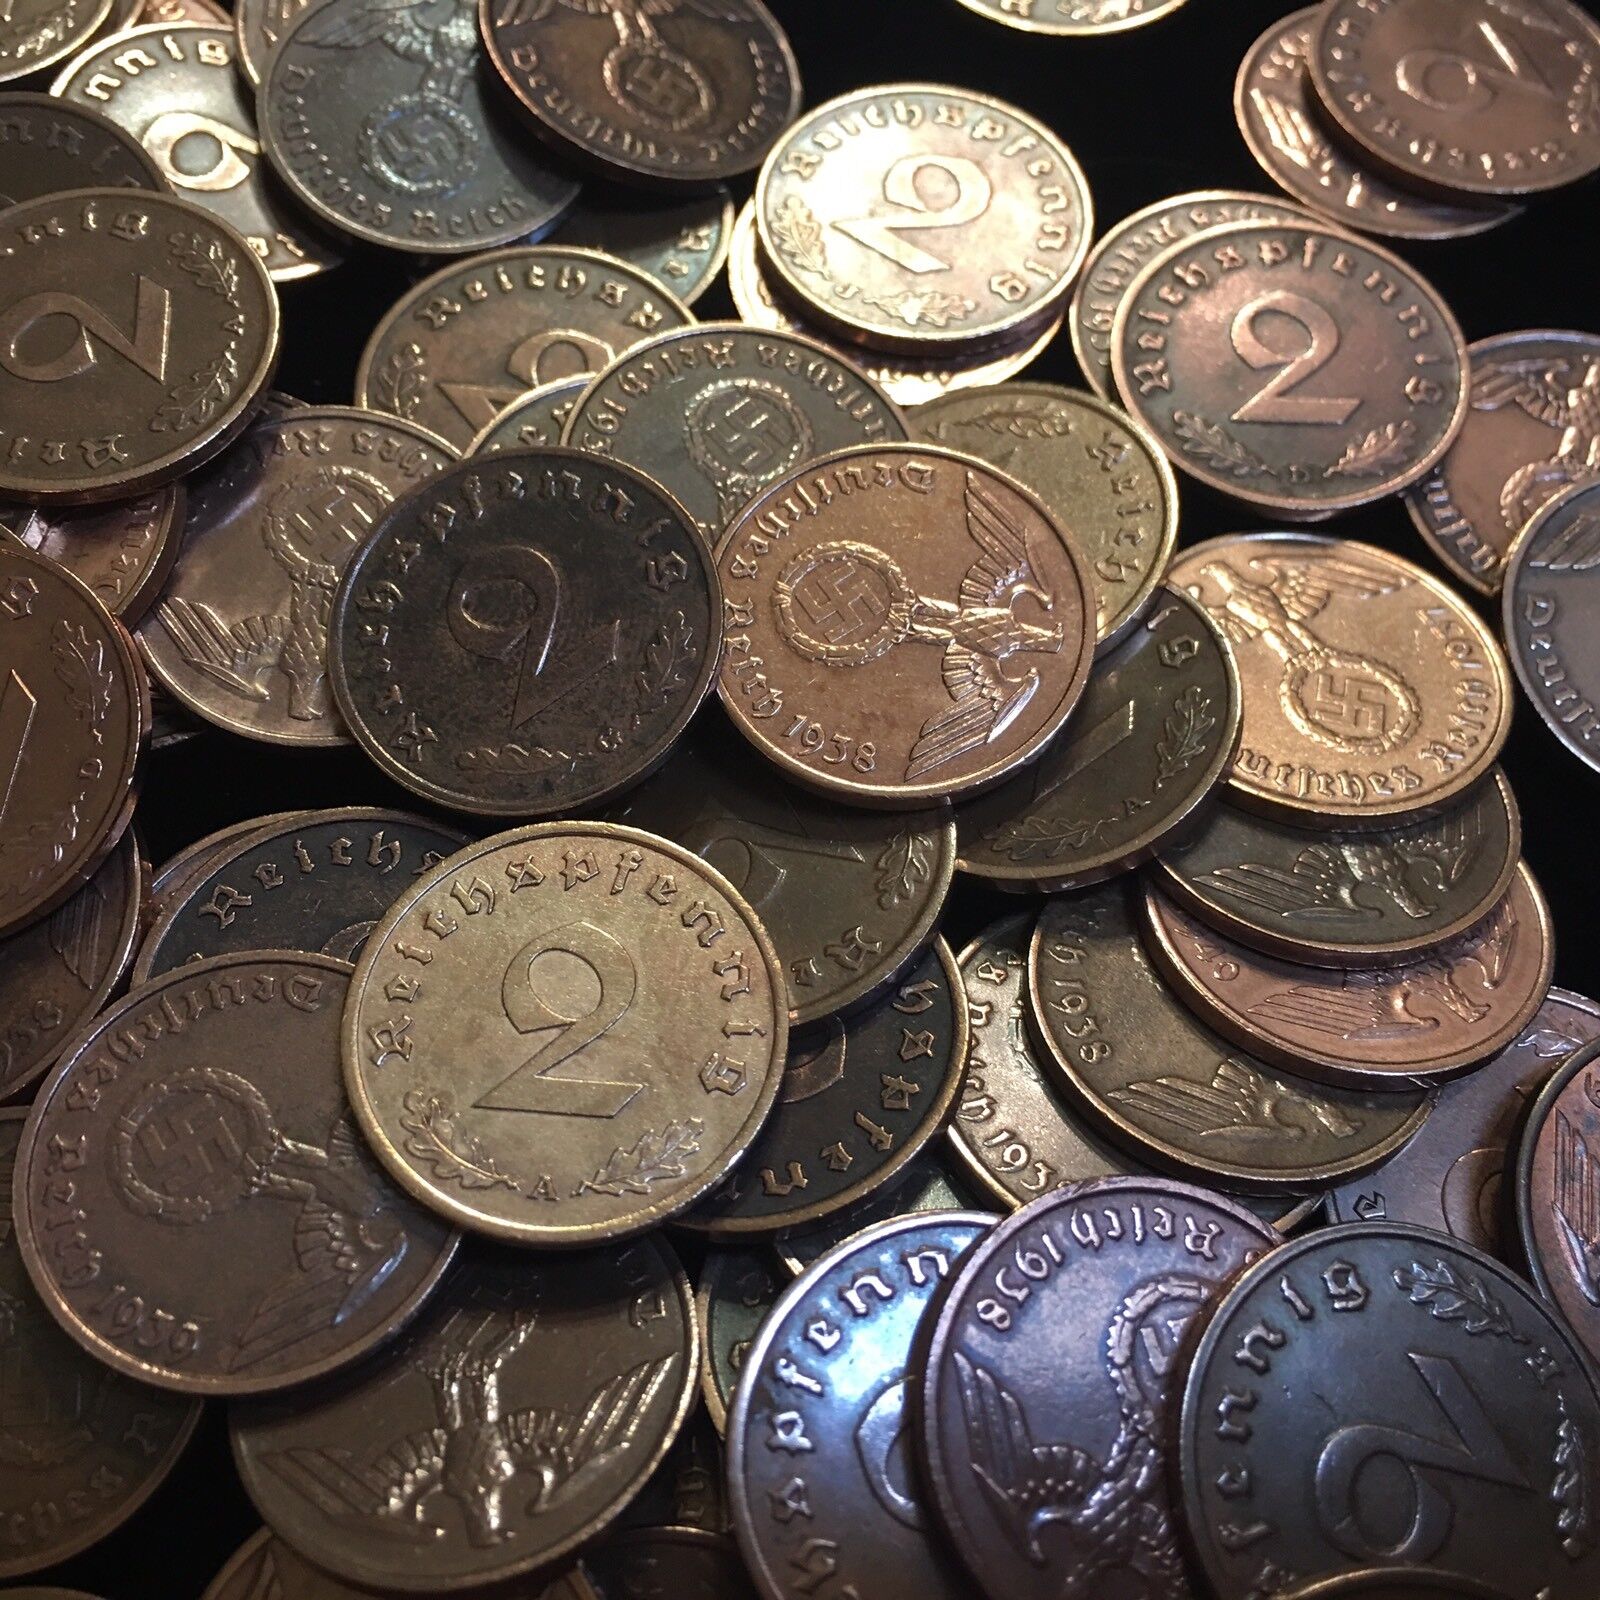 Rare WW2 German 2 RP Reichspfennig 3rd Reich Bronze Nazi Coin Buy 3 Get 1 Free Без бренда - фотография #10